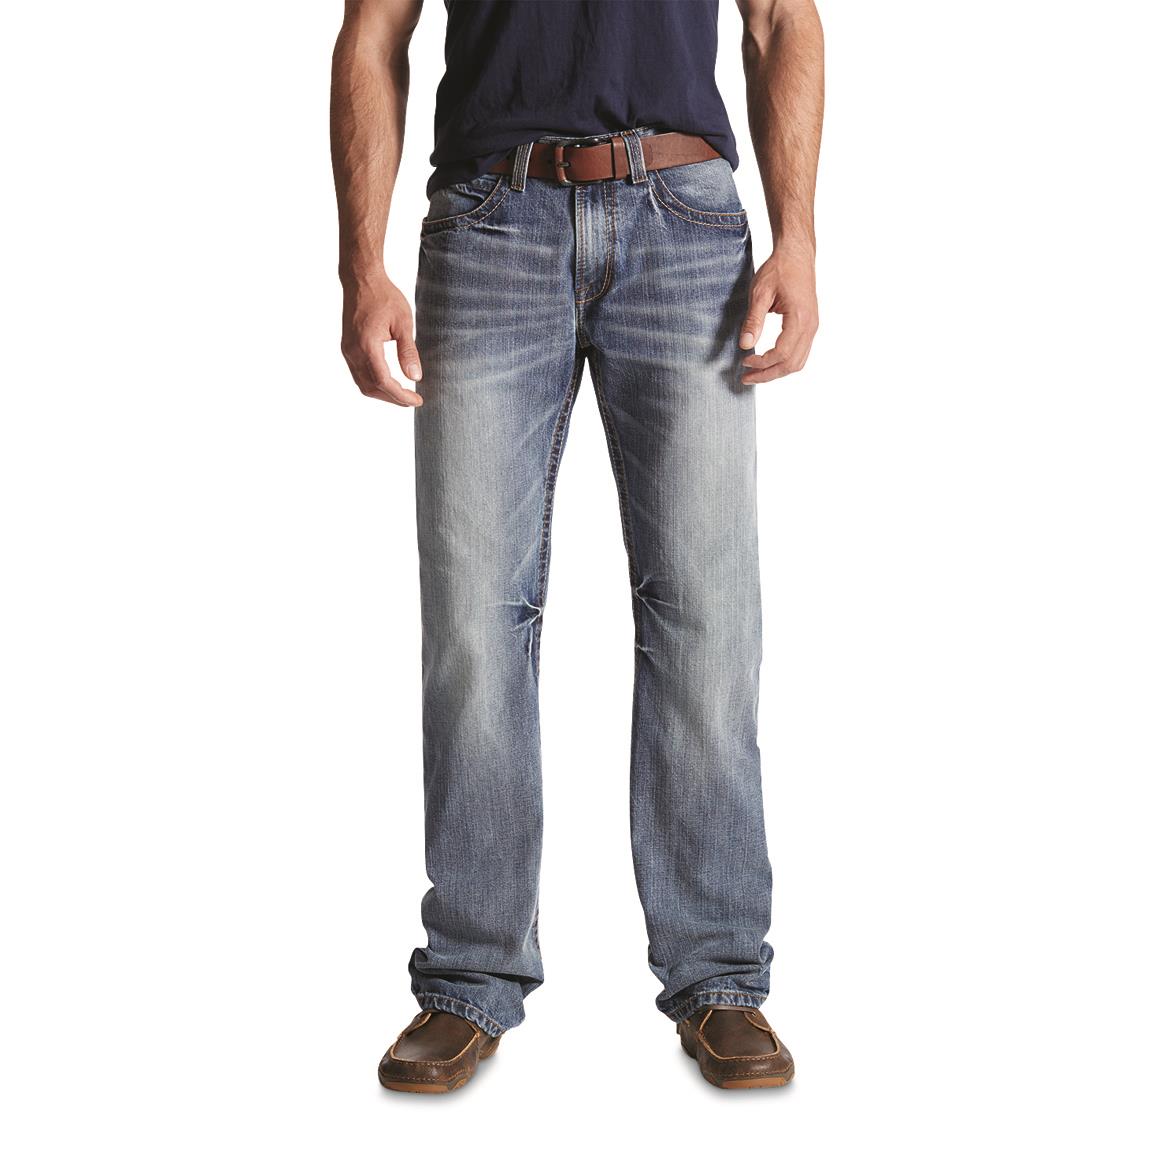 Ariat Men's M4 Low Rise Bootcut Jeans, Durango